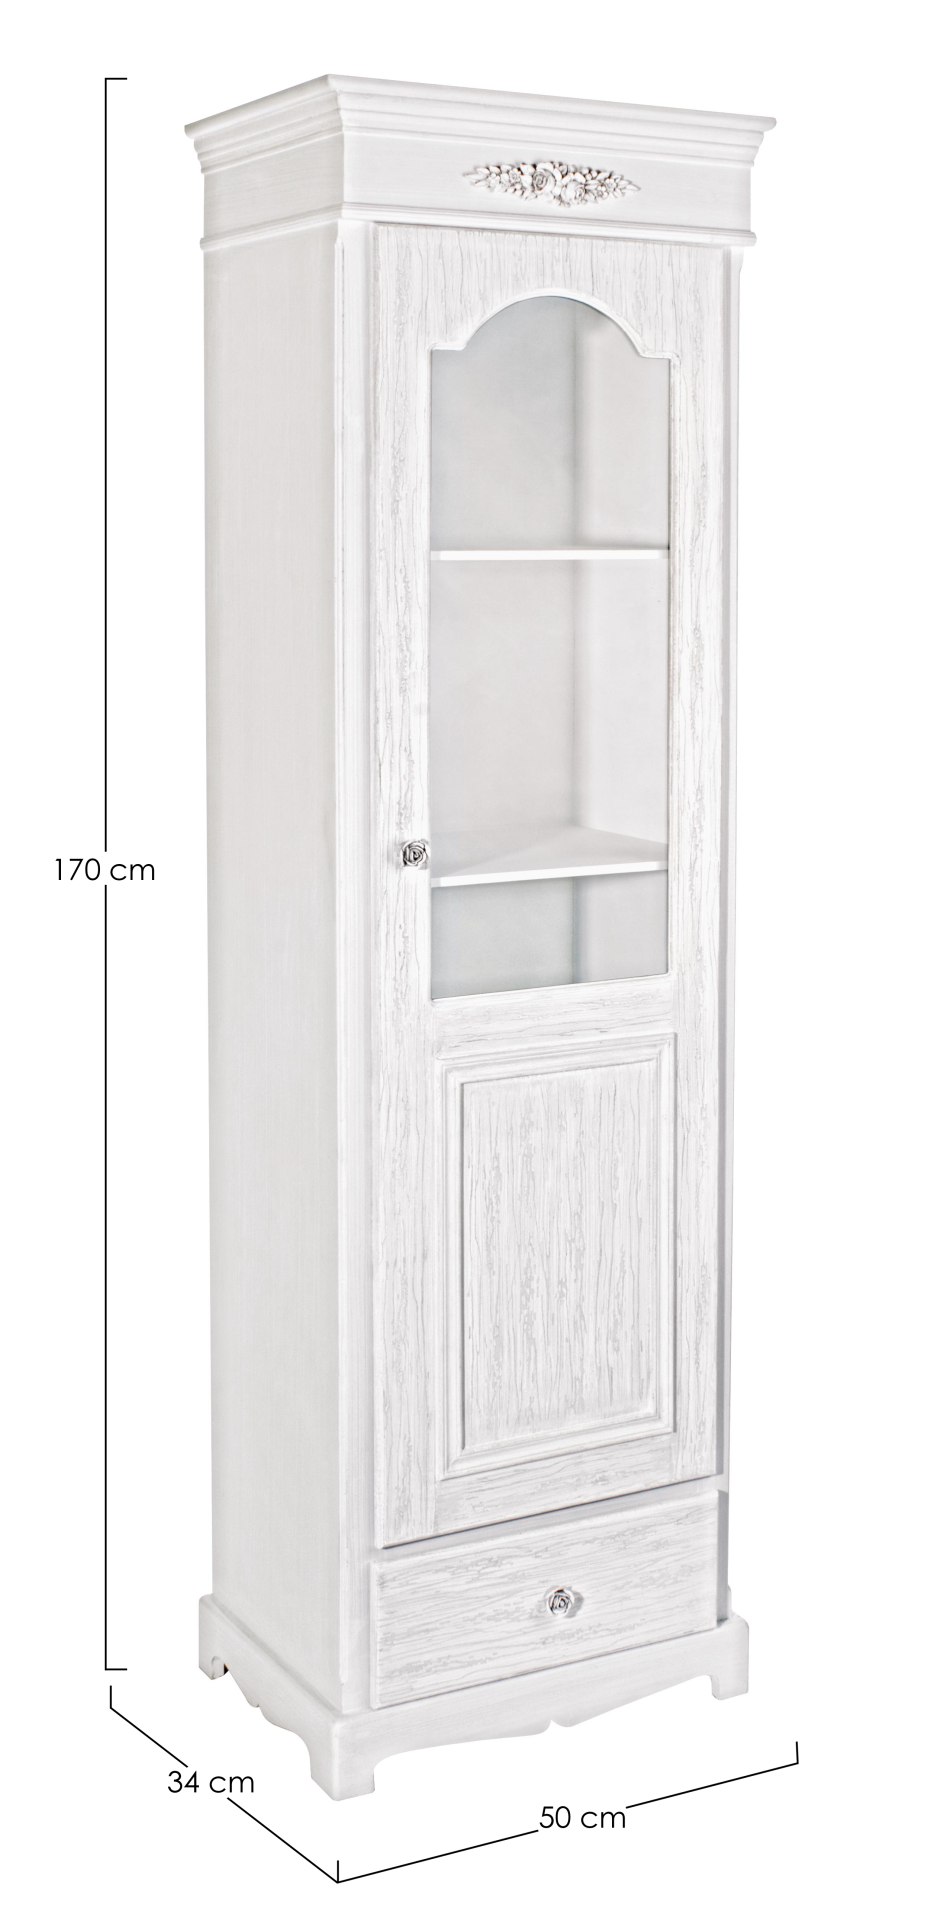 Die Vitrine Blanc überzeugt mit ihrem klassischen Design. Gefertigt wurde sie aus MDF, welches einen weißen Farbton besitzt. Die Vitrine verfügt über eine Glastür und eine Schublade mit ausreichend Stauraum im inneren. Die Breite beträgt 50 cm.